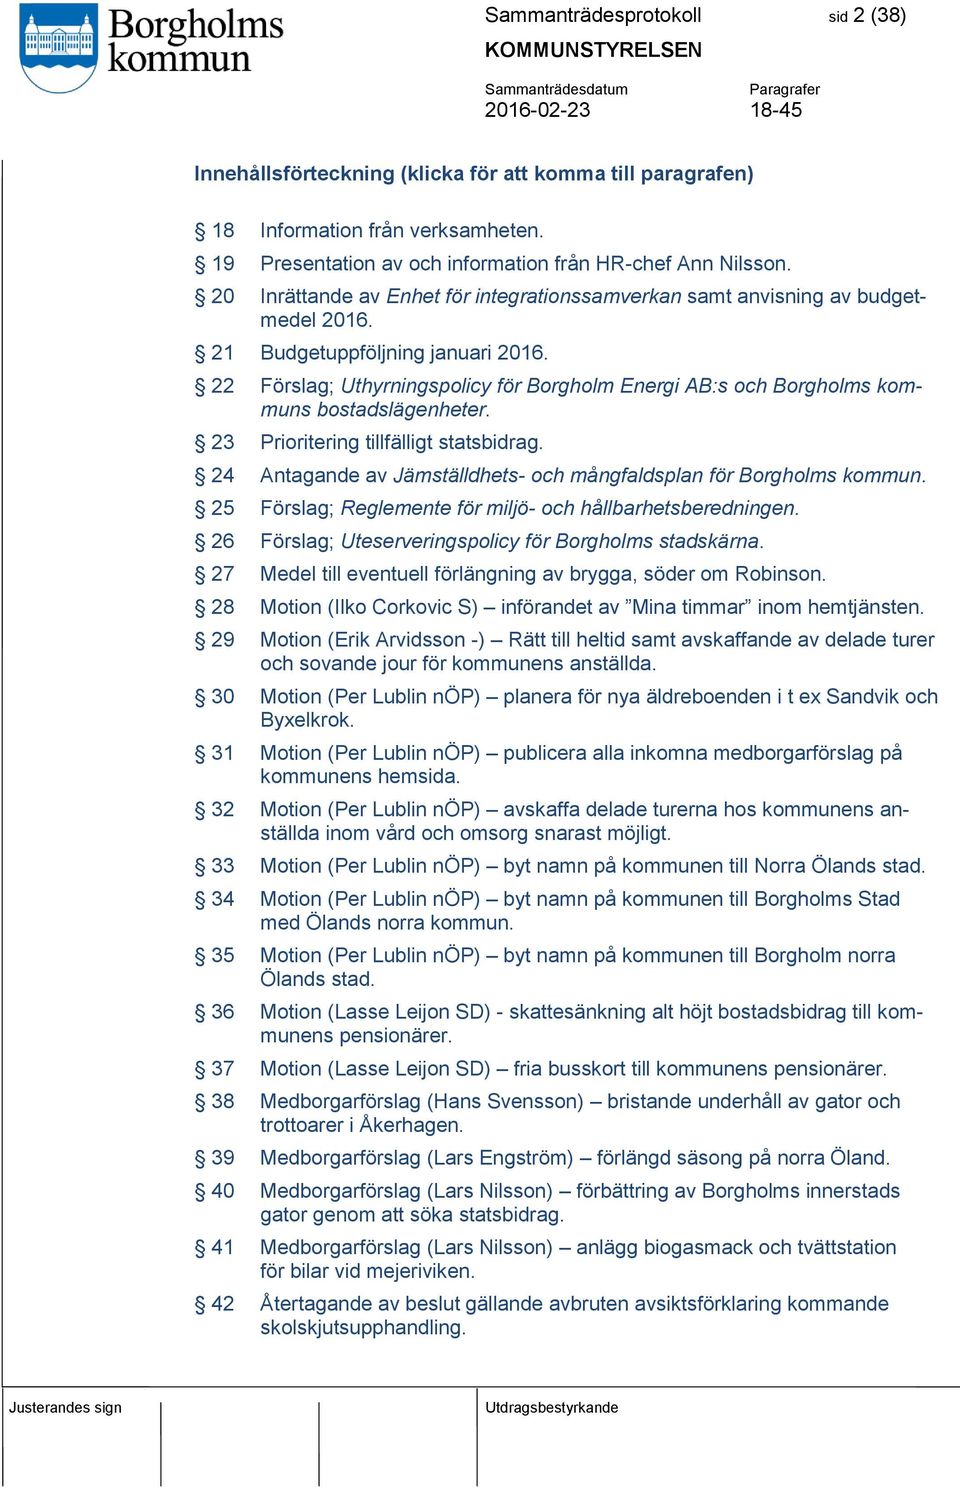 22 Förslag; Uthyrningspolicy för Borgholm Energi AB:s och Borgholms kommuns bostadslägenheter. 23 Prioritering tillfälligt statsbidrag.